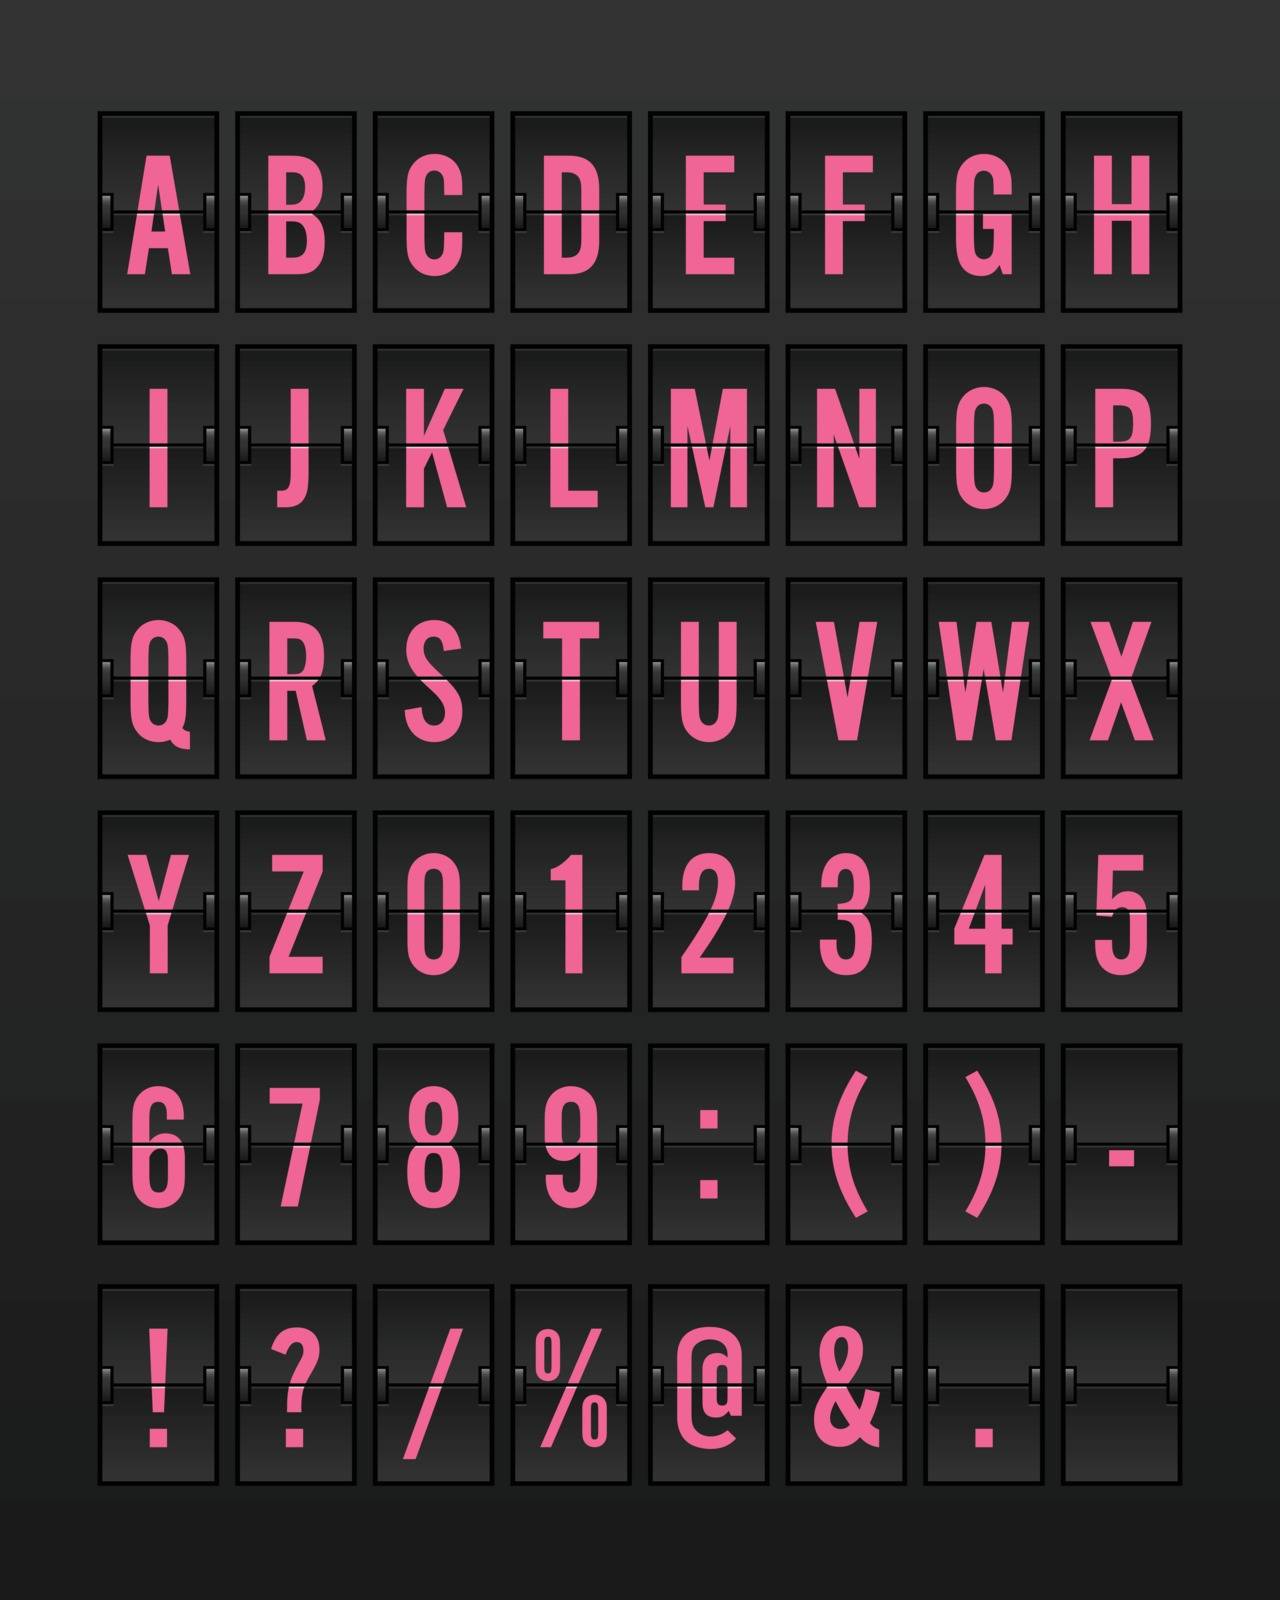 Airport Mechanical Flip Board Panel Font - Pink Font on Dark Background Vector Illustration